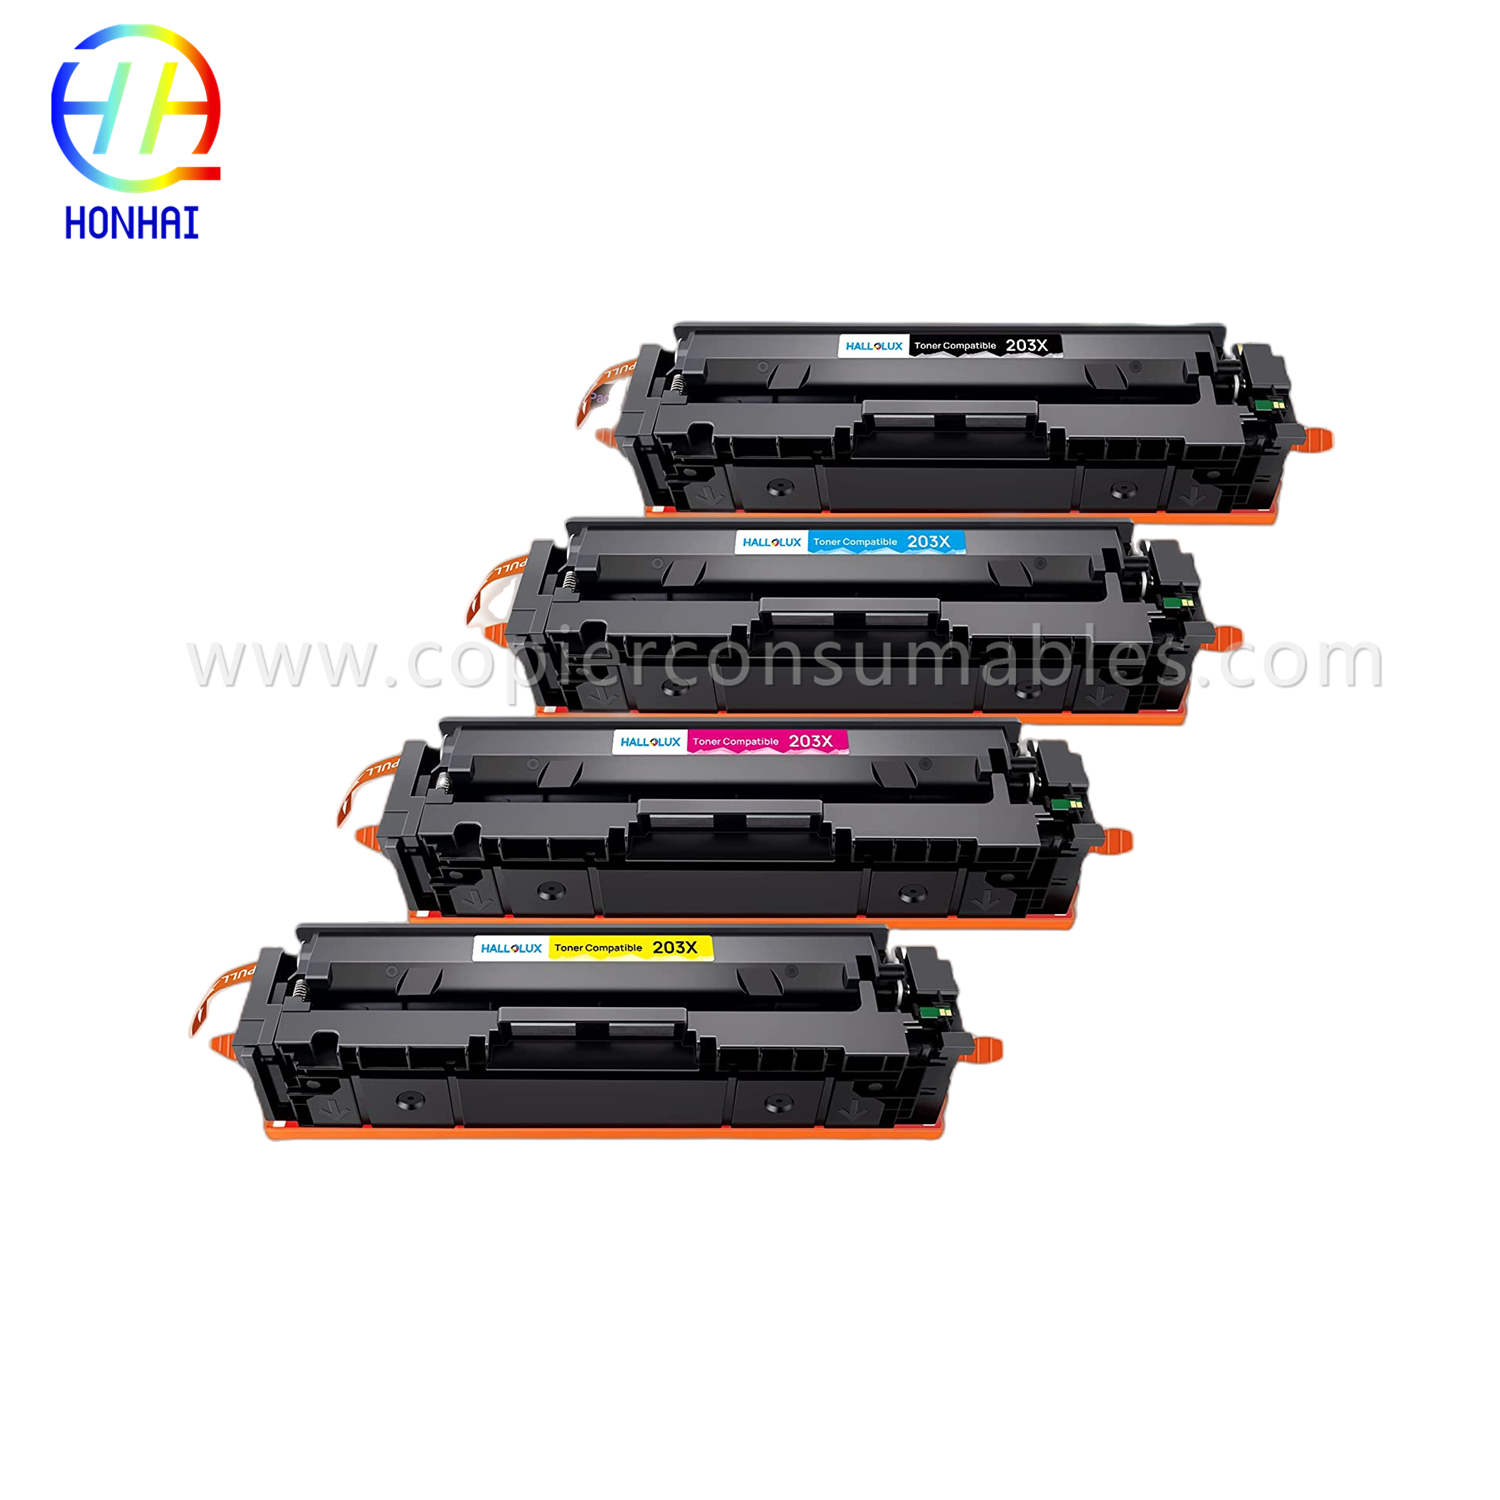 https://www.copierhonhaitech.com/toner-cartridge-for-hp-colour-laserjet-pro-m254dn-m254dw-m254nw-m280nw-m281cdw-m281fdn-m281fdw-203a-cf543a-oem-product/-oem